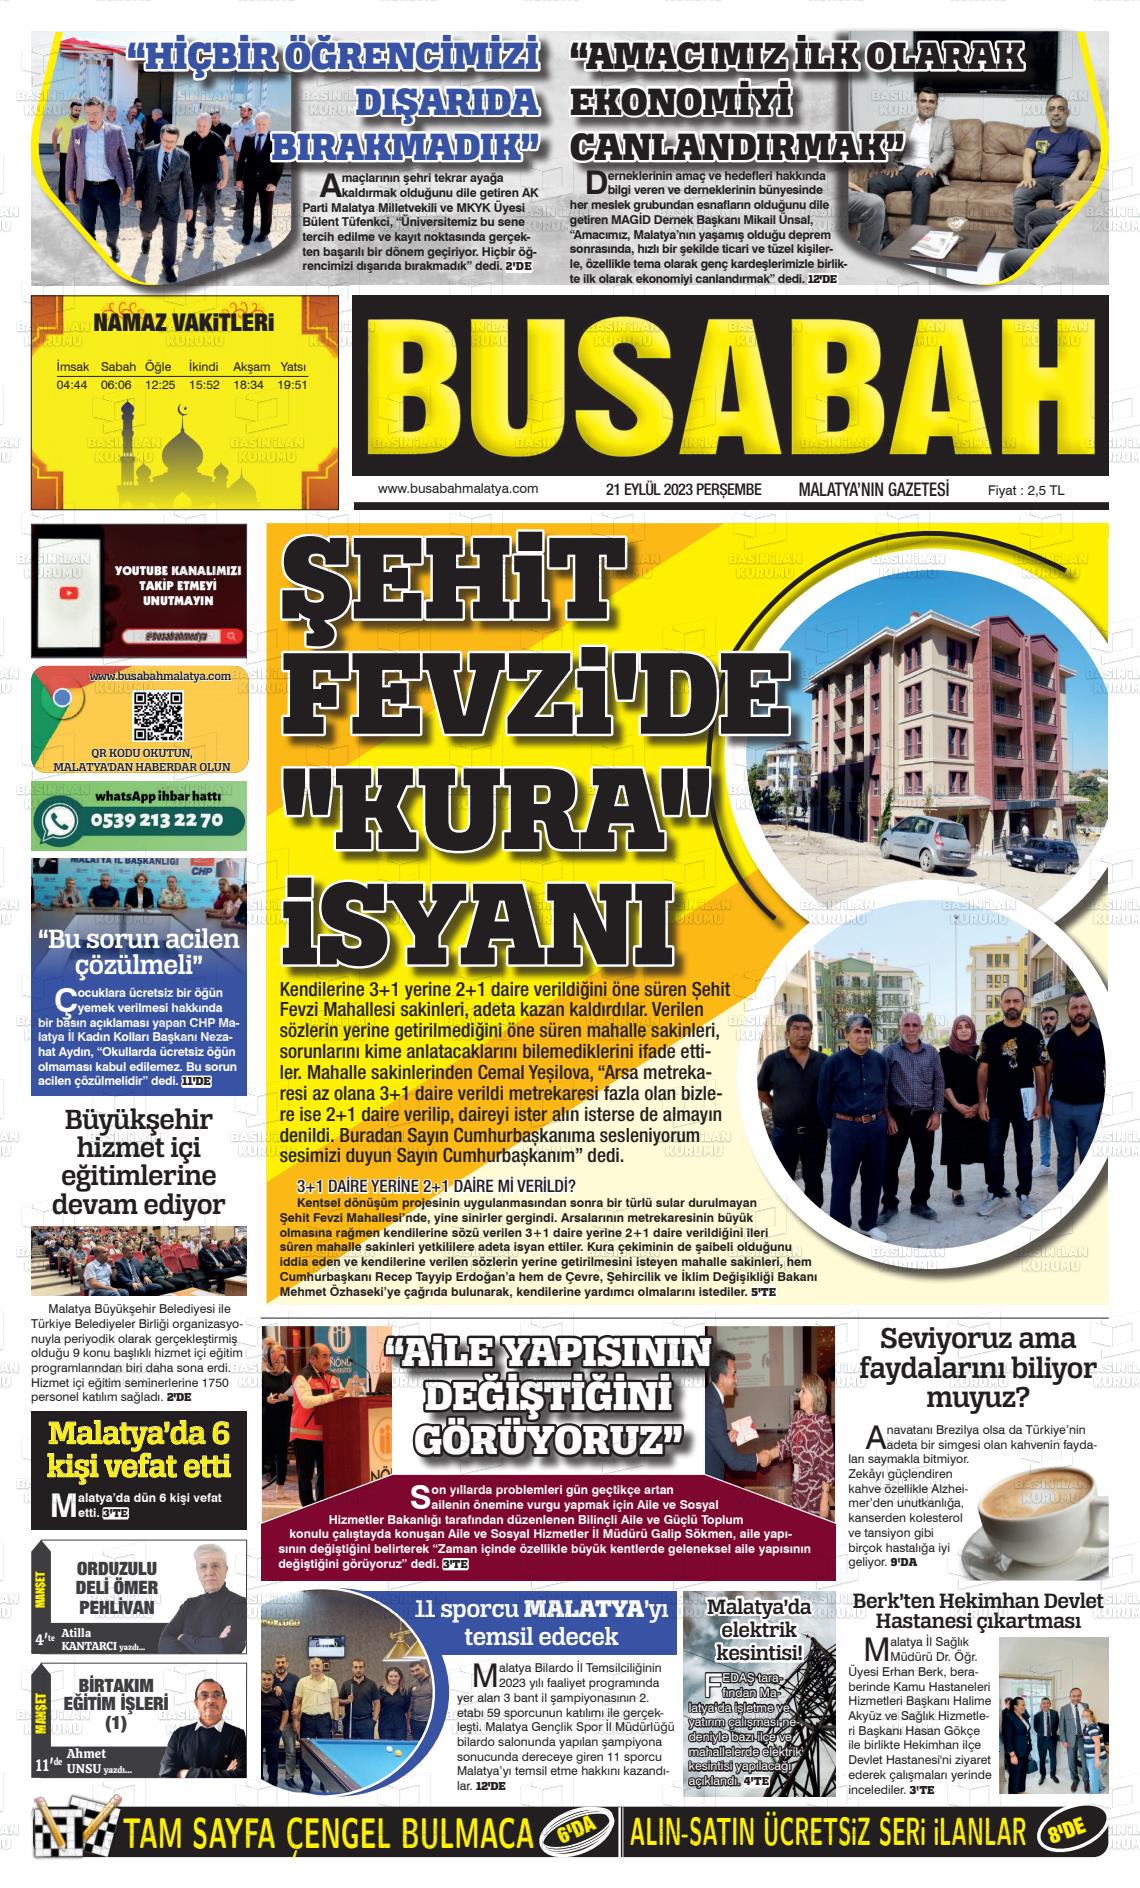 Malatya Bu Sabah gazetesi manşet ilk sayfa oku